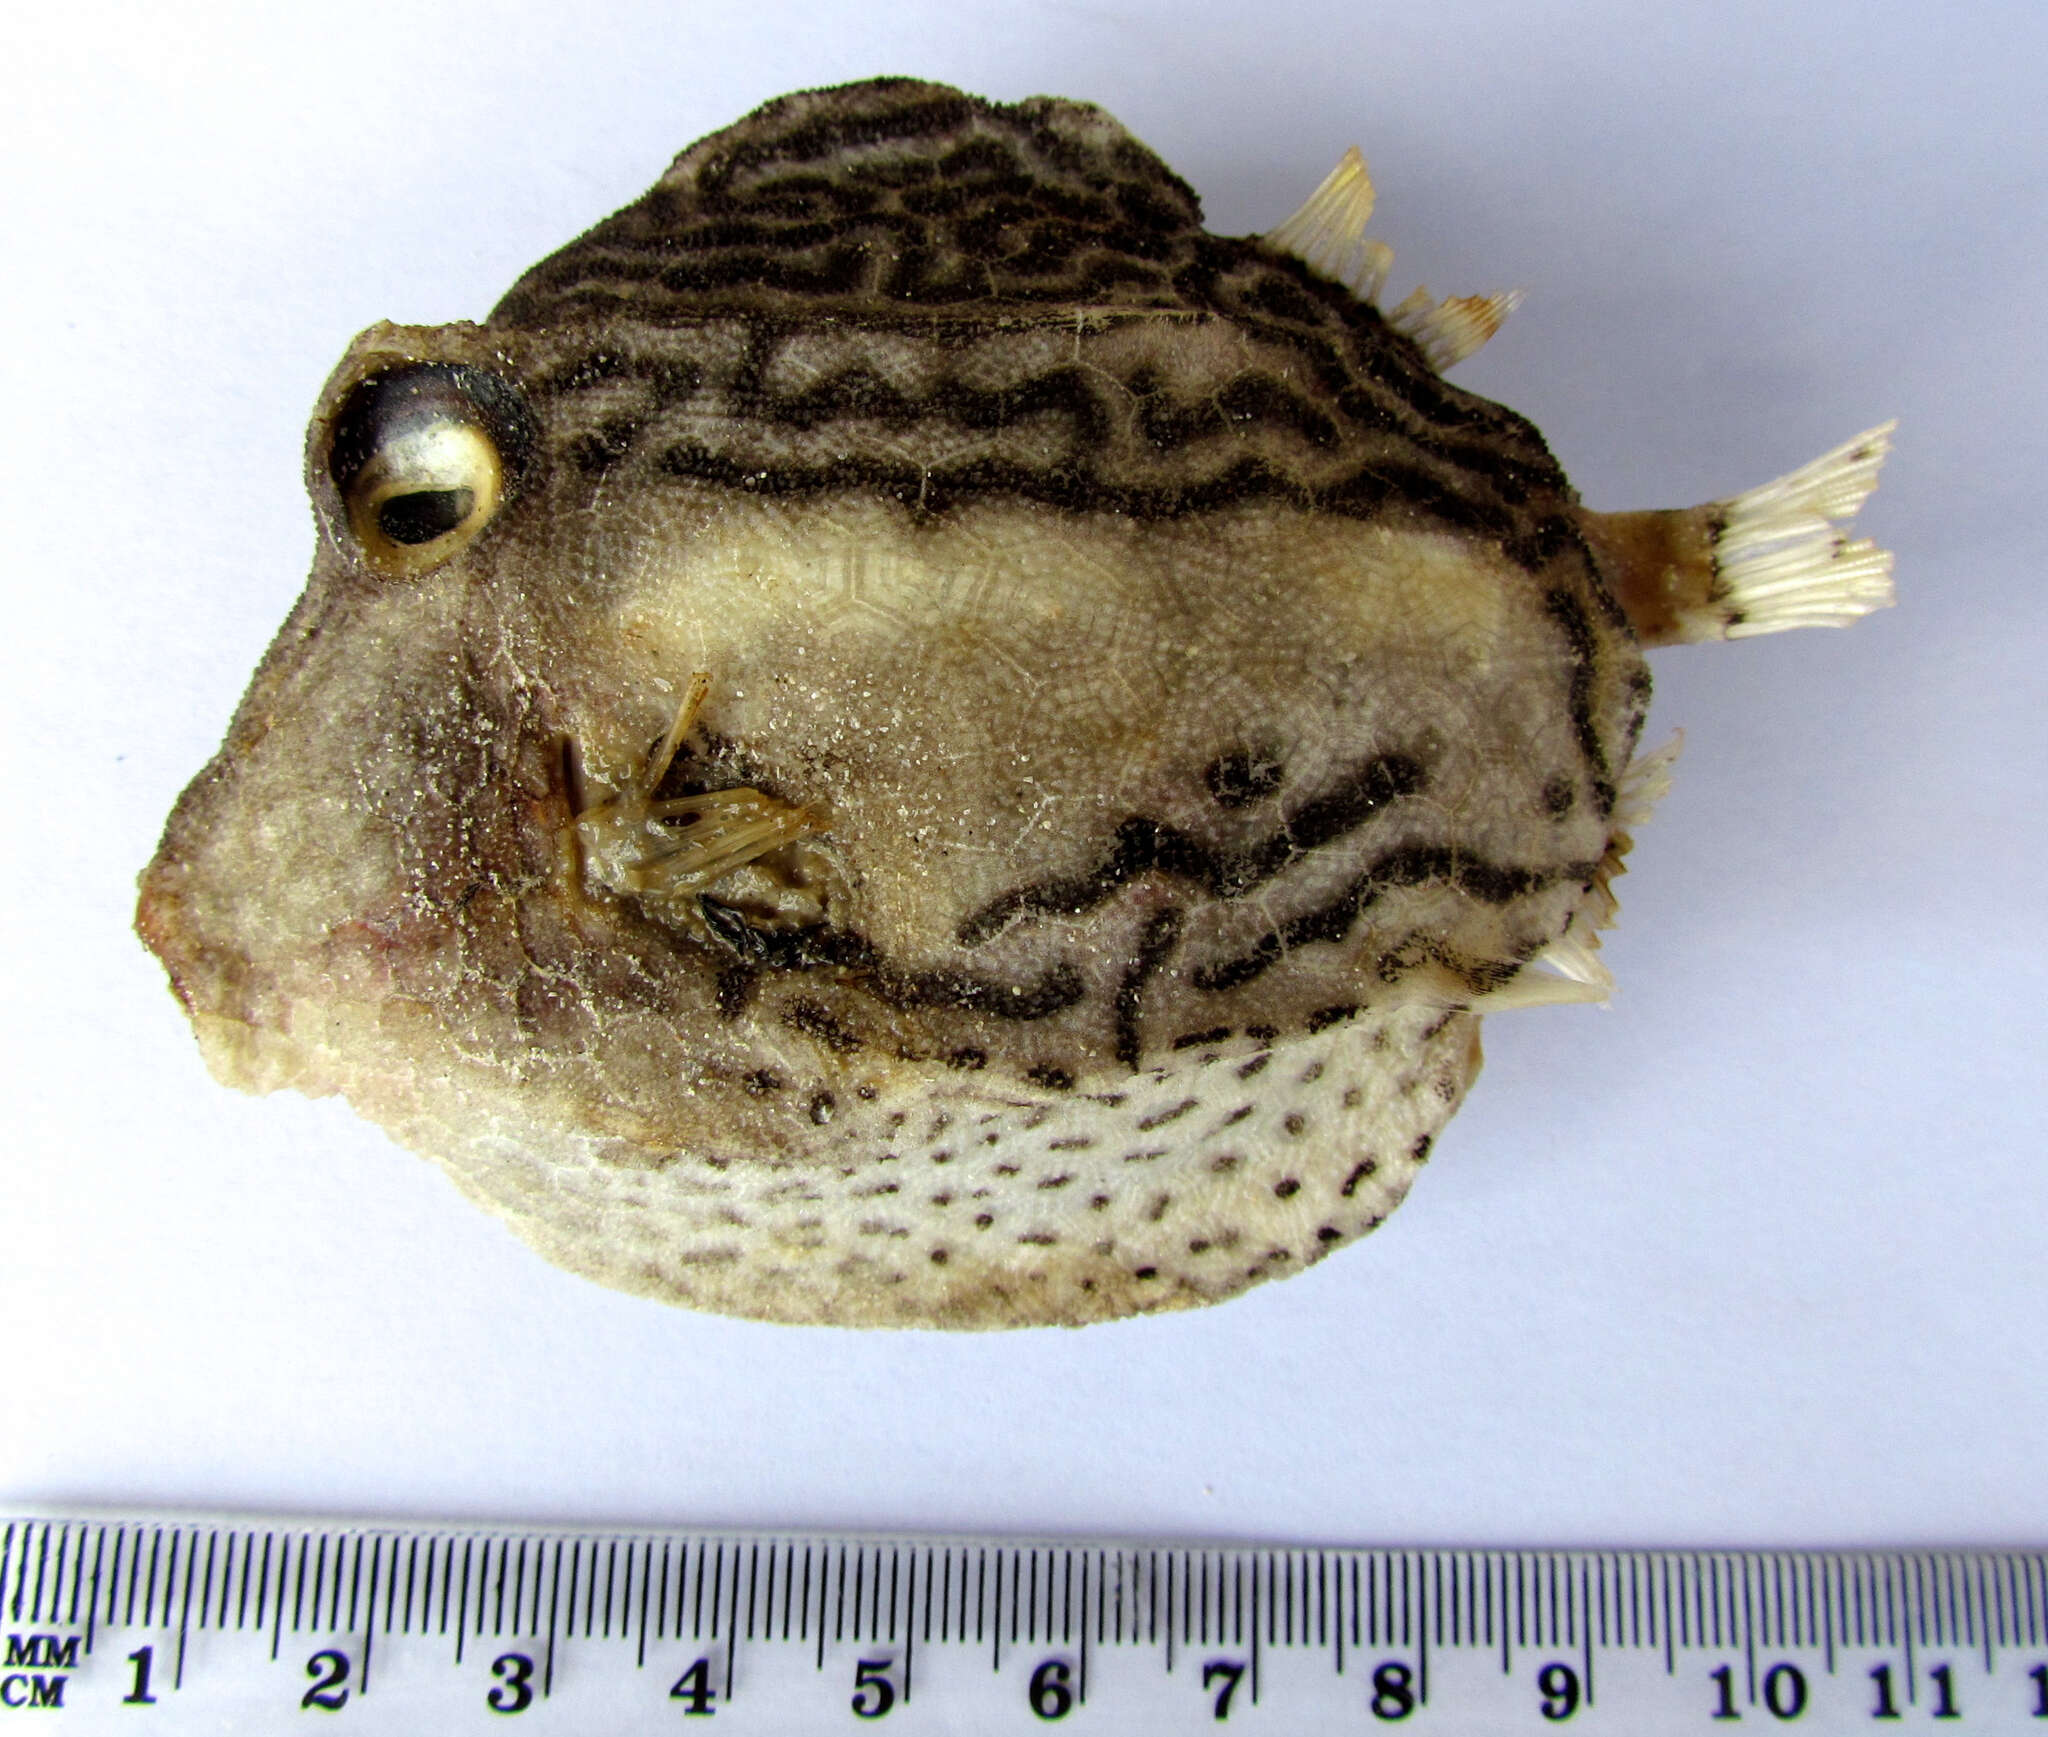 Image of Black-spotted boxfish